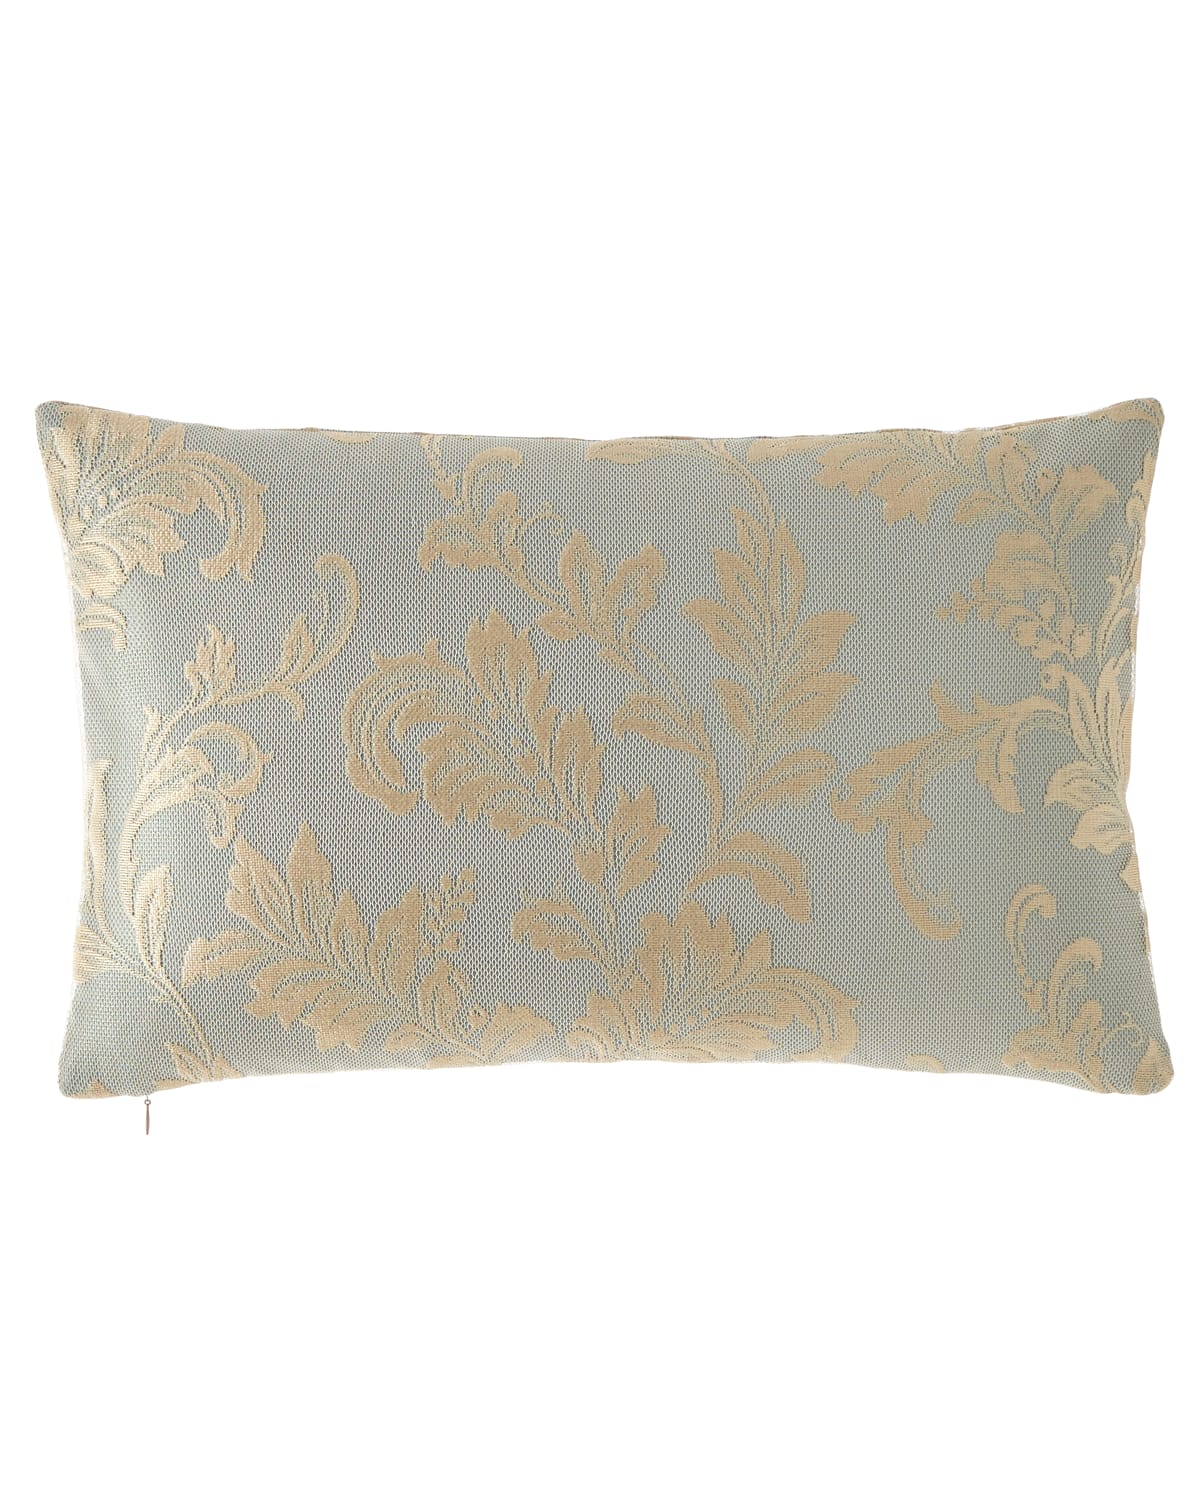 Image Sweet Dreams Renaissance Lace Oblong Pillow